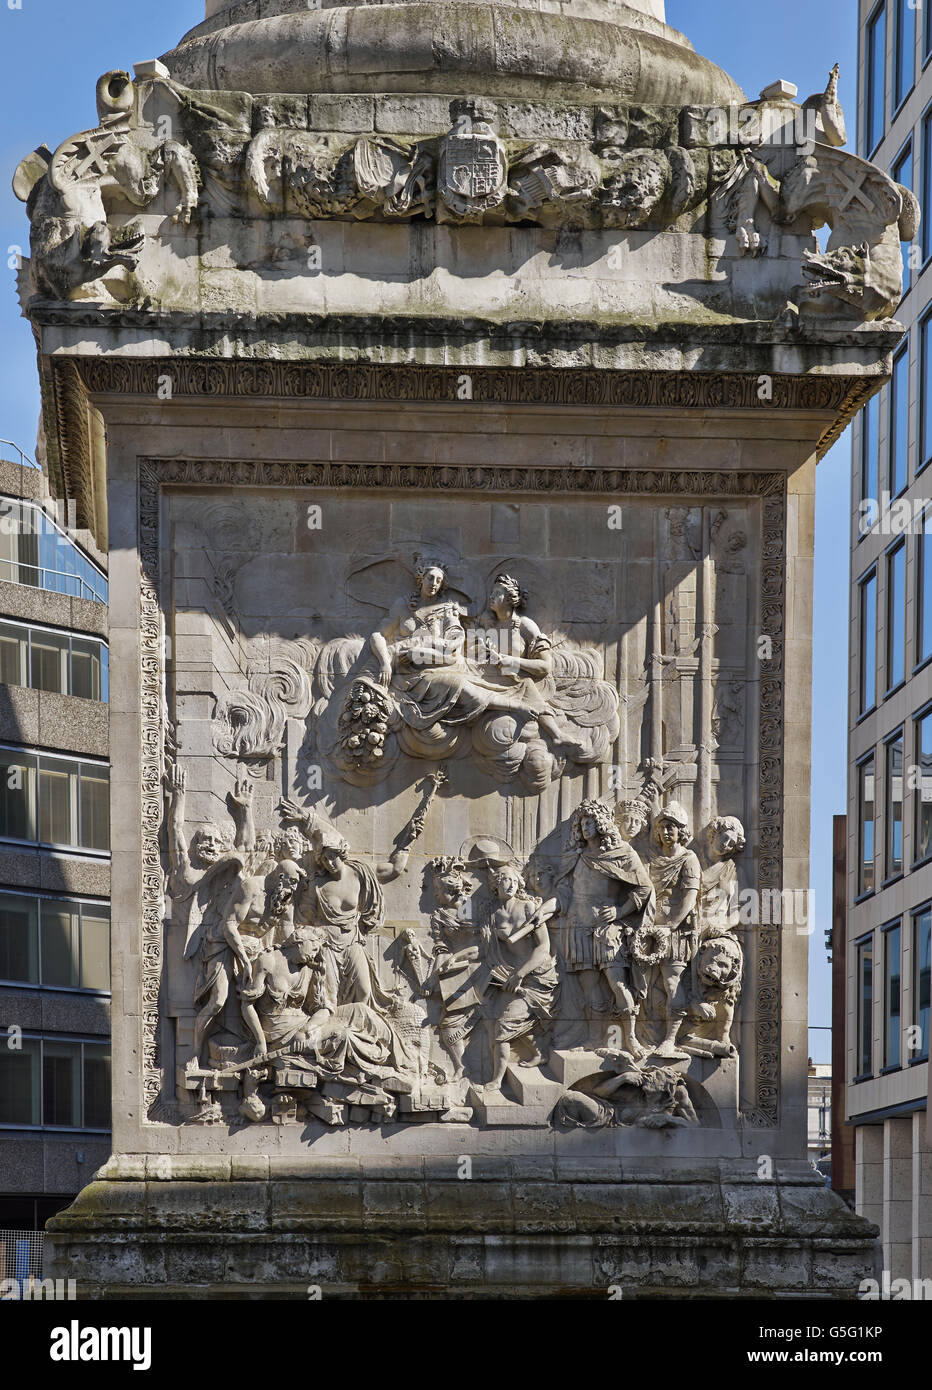 Das Denkmal für den großen Brand von London, 1670-1675. Gedenktafel an der Westfassade des Sockels. Stockfoto